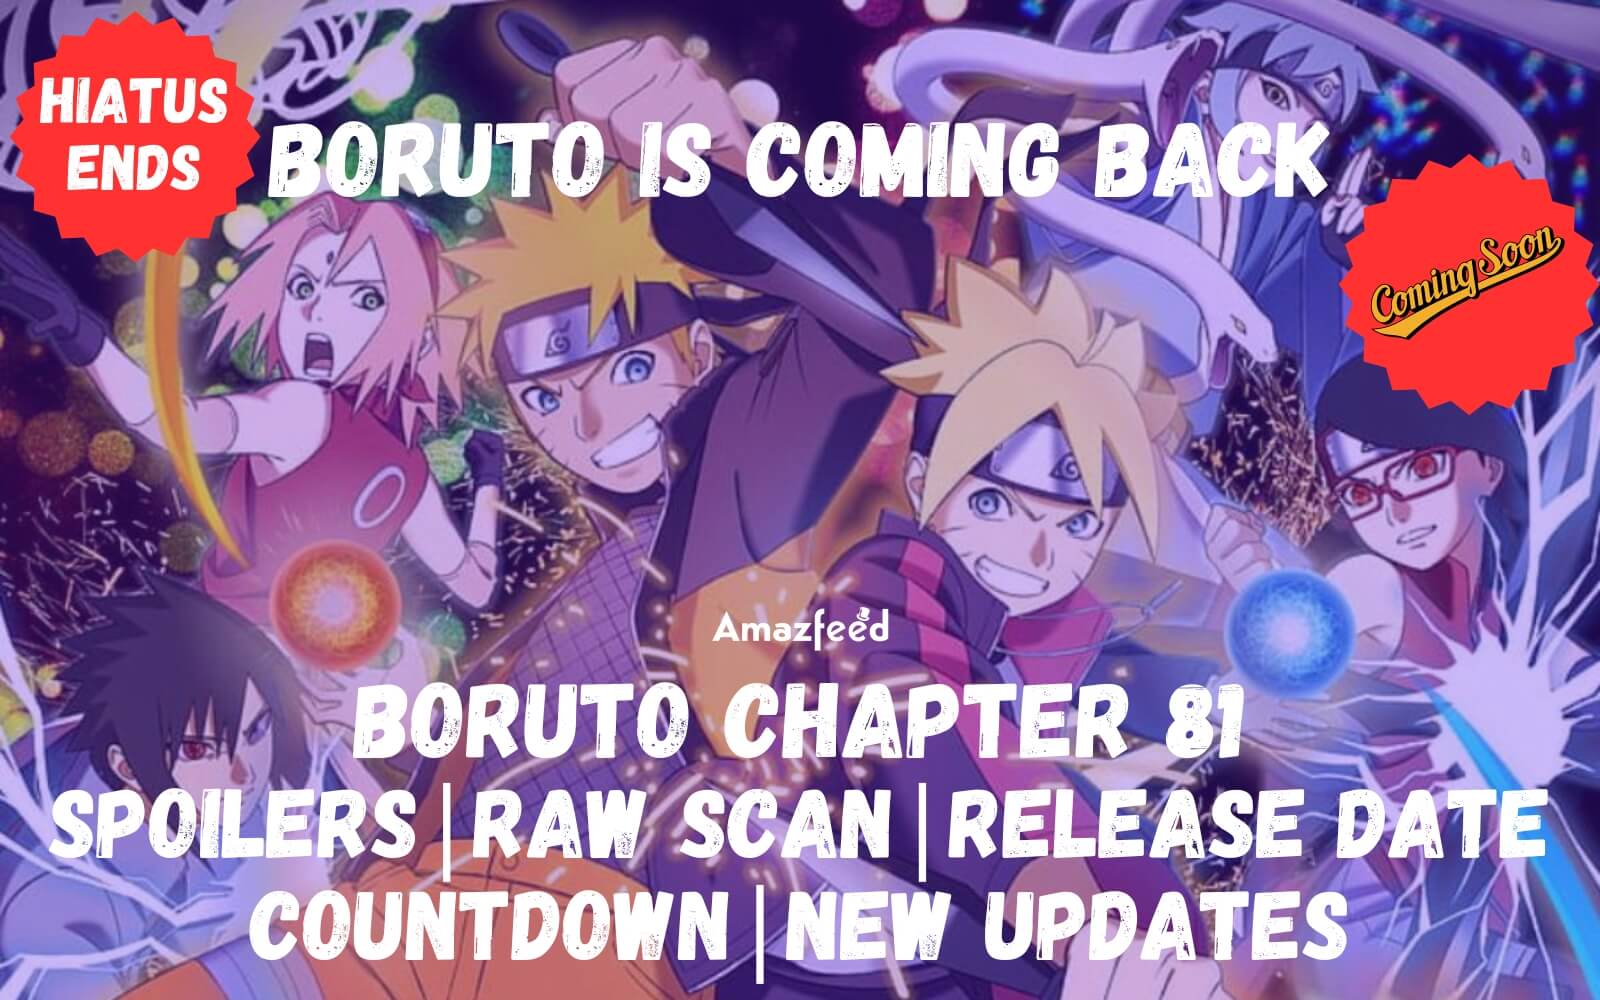 CapCut_boruto leaks chapter 81